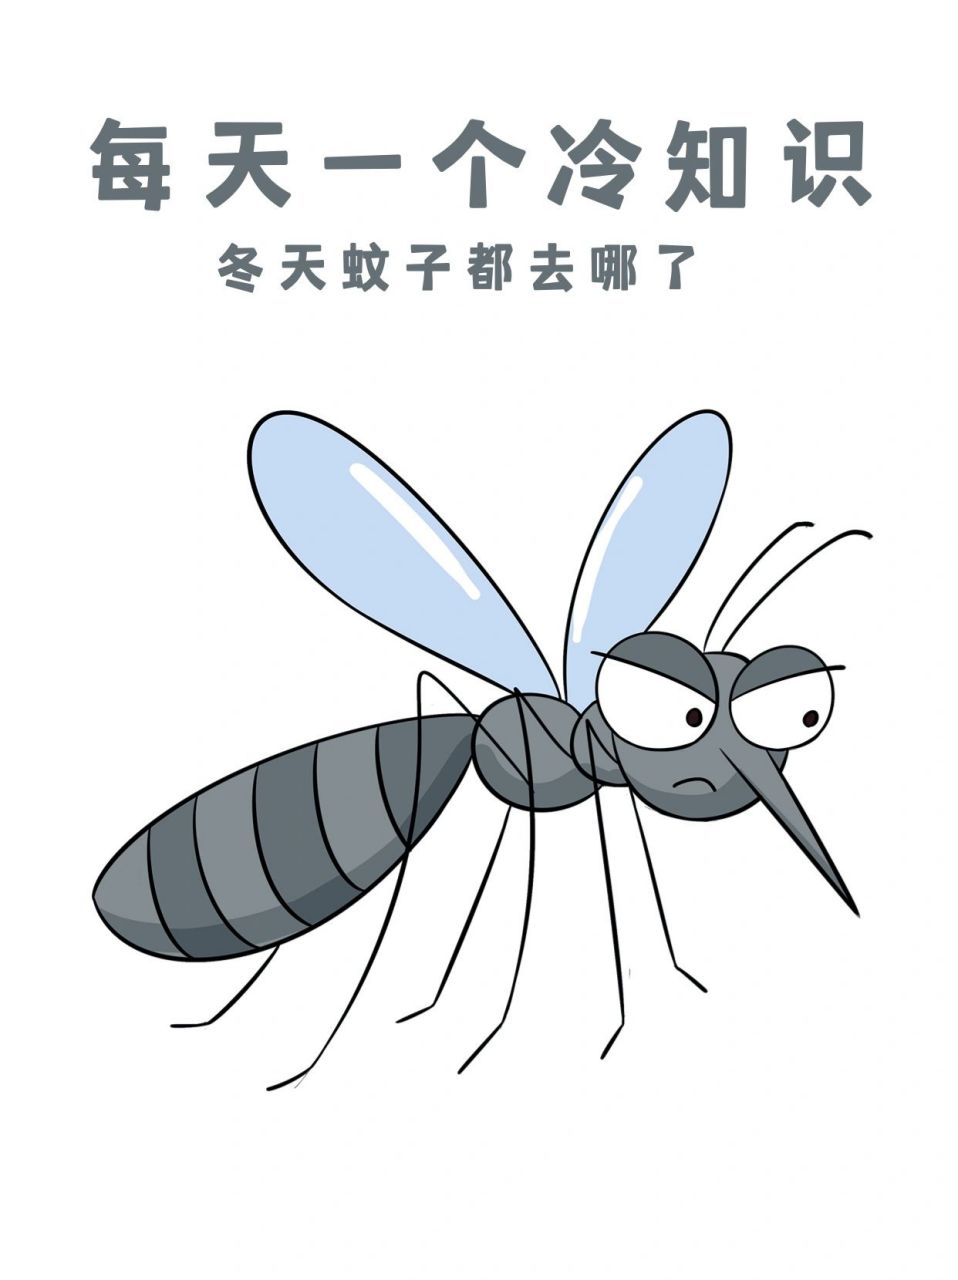 冬天蚊子都去哪了 冬天蚊子其实也会冬眠,蚊子的生活状态跟温度的关系